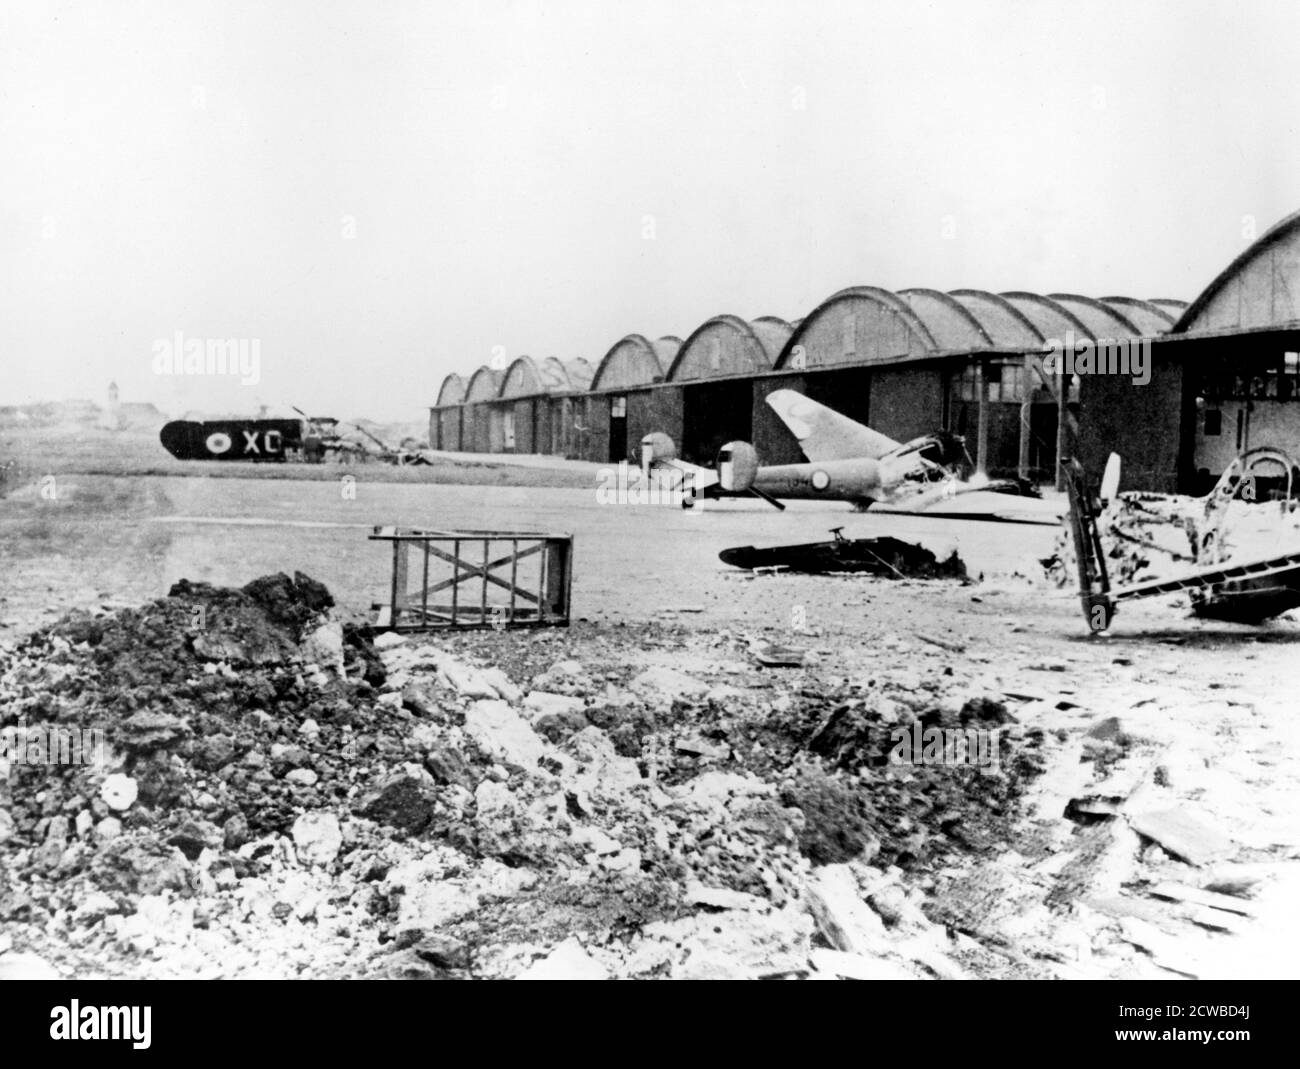 Aerei distrutti presso il campo di aviazione le Bourget, Parigi occupata dalla Germania, luglio 1940. Il fotografo è sconosciuto. Foto Stock